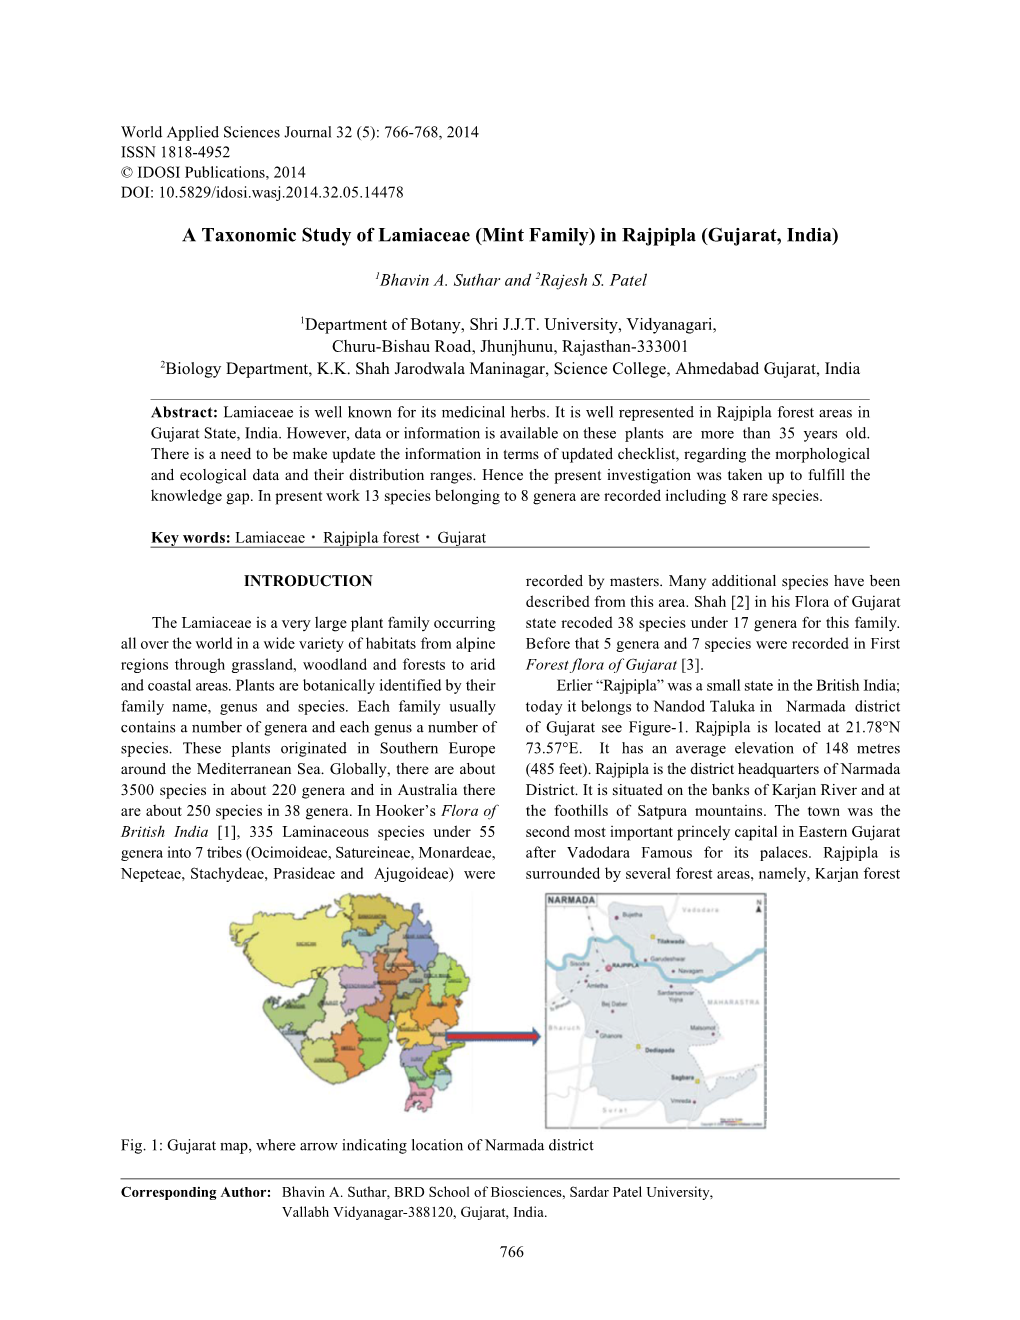 A Taxonomic Study of Lamiaceae (Mint Family) in Rajpipla (Gujarat, India)